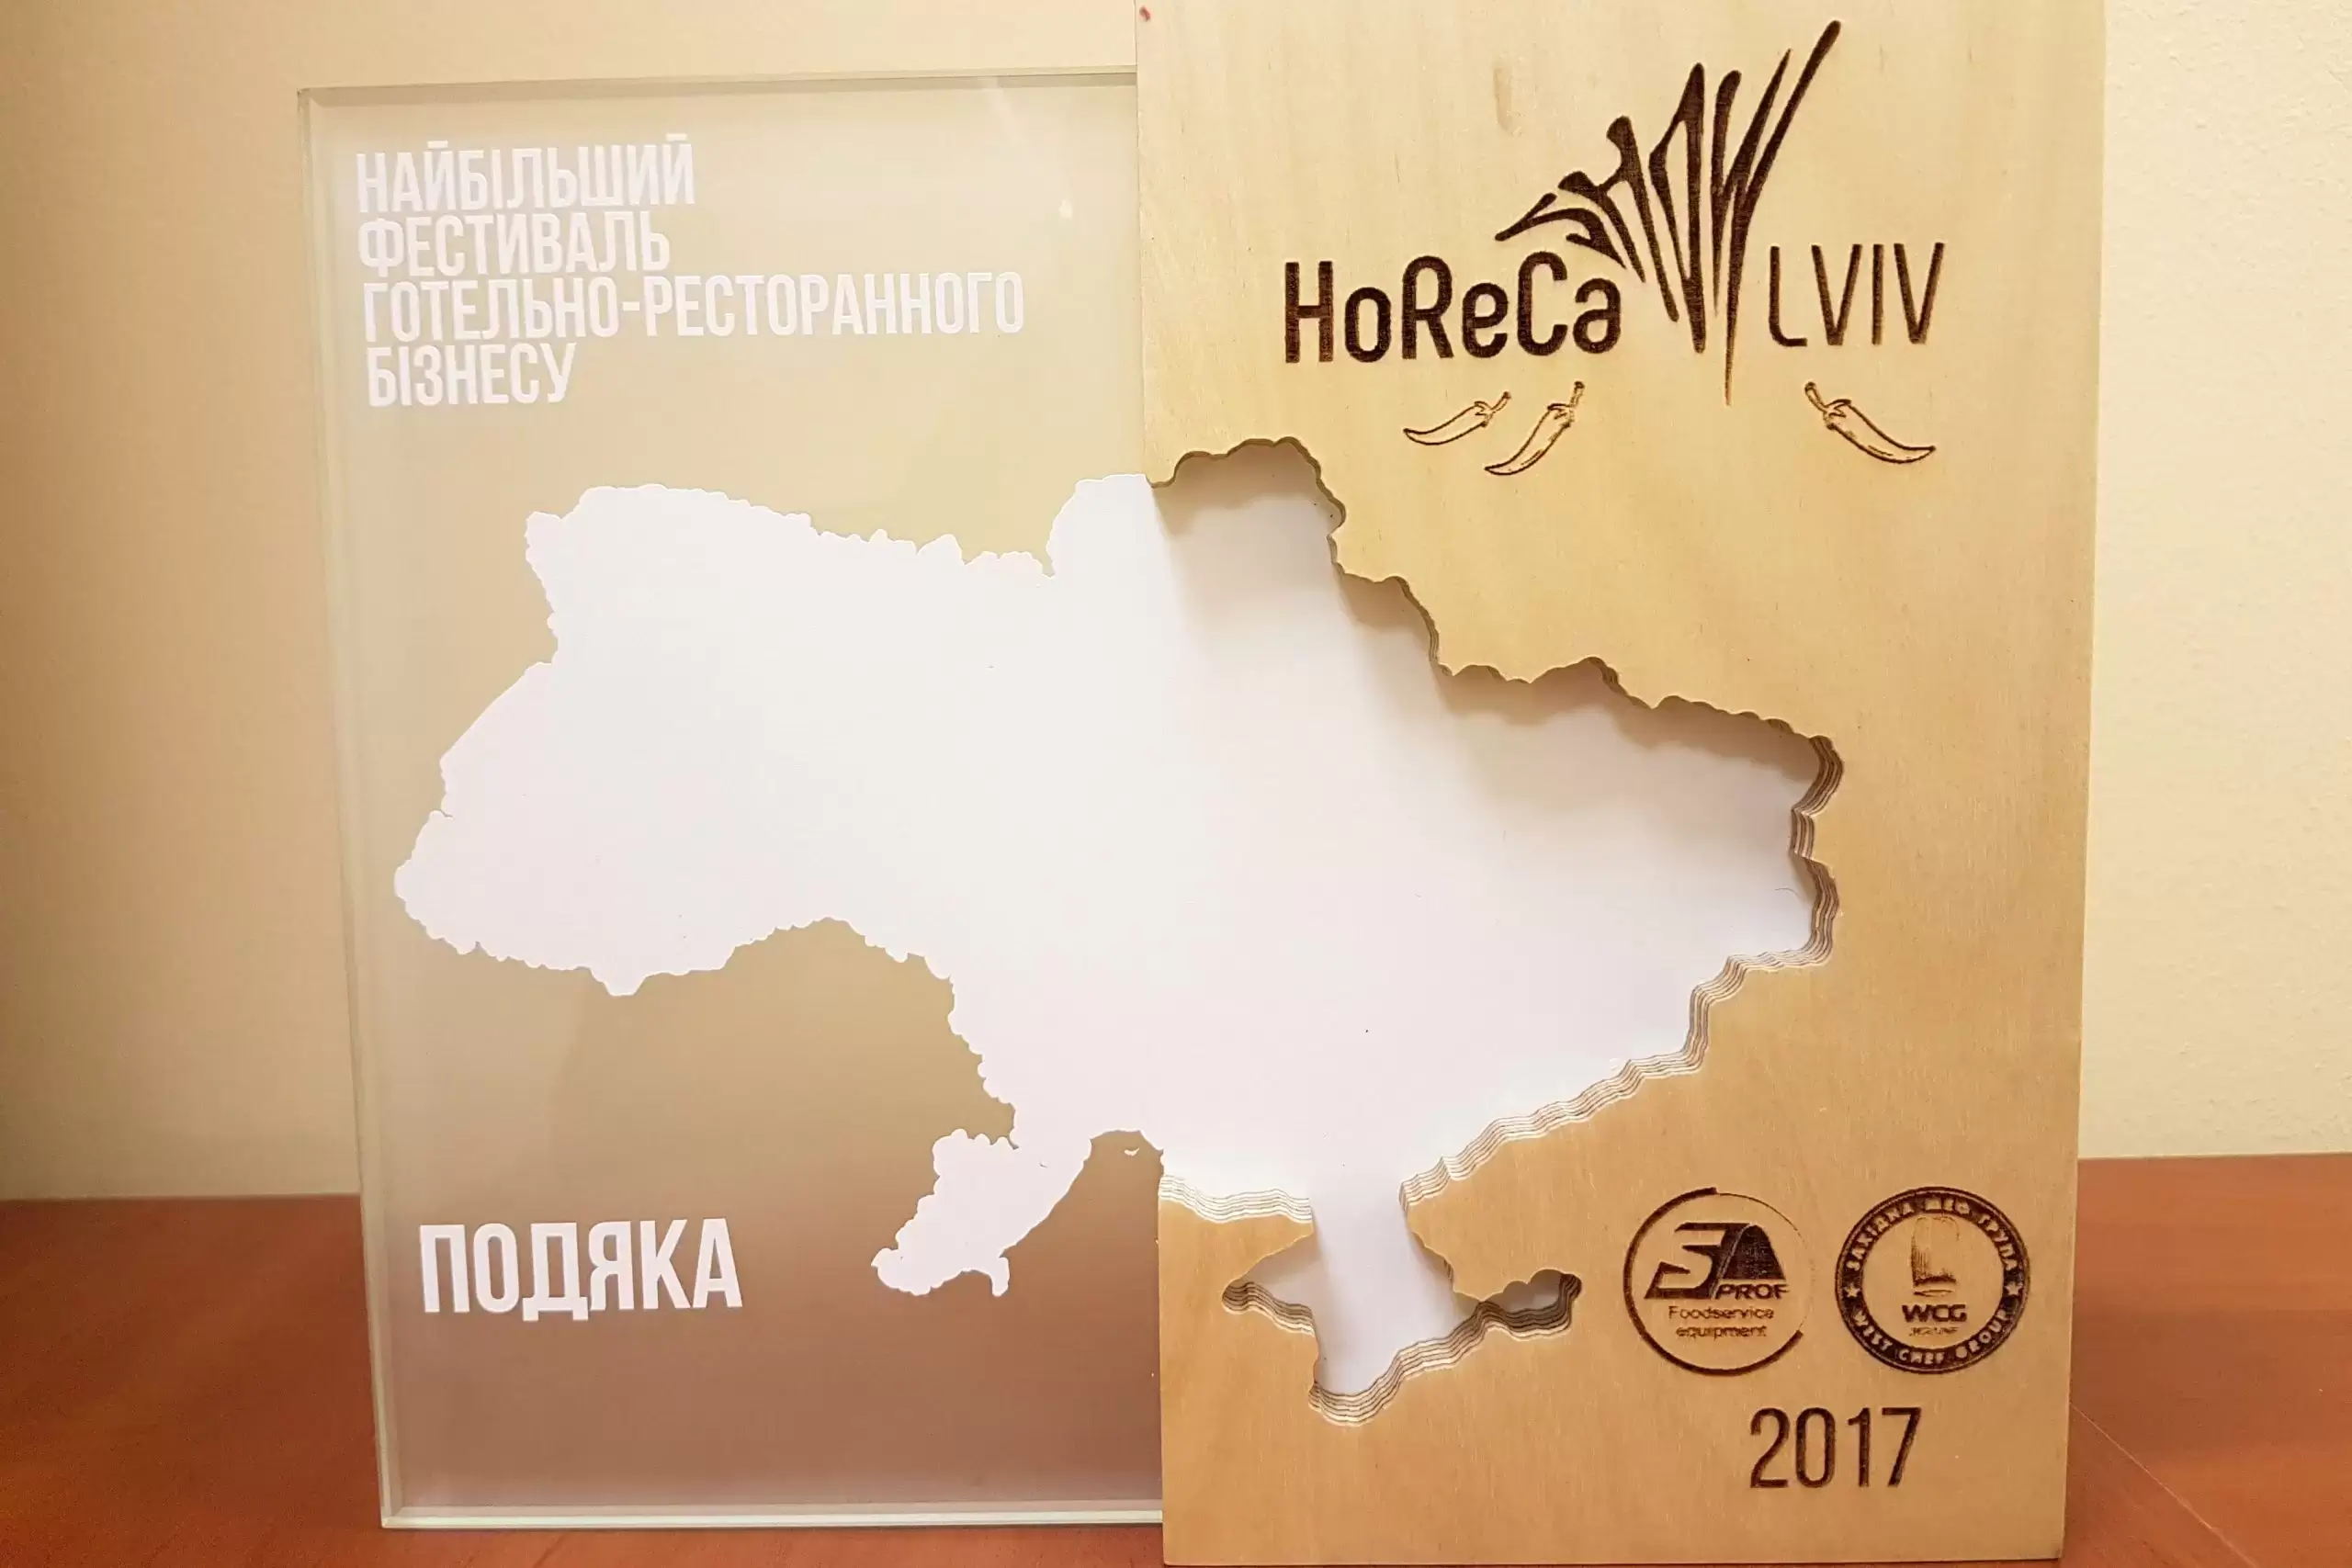 Участь у виставці HoReCa SHOW Lviv (Львів, 1.12-3.12, 2017)